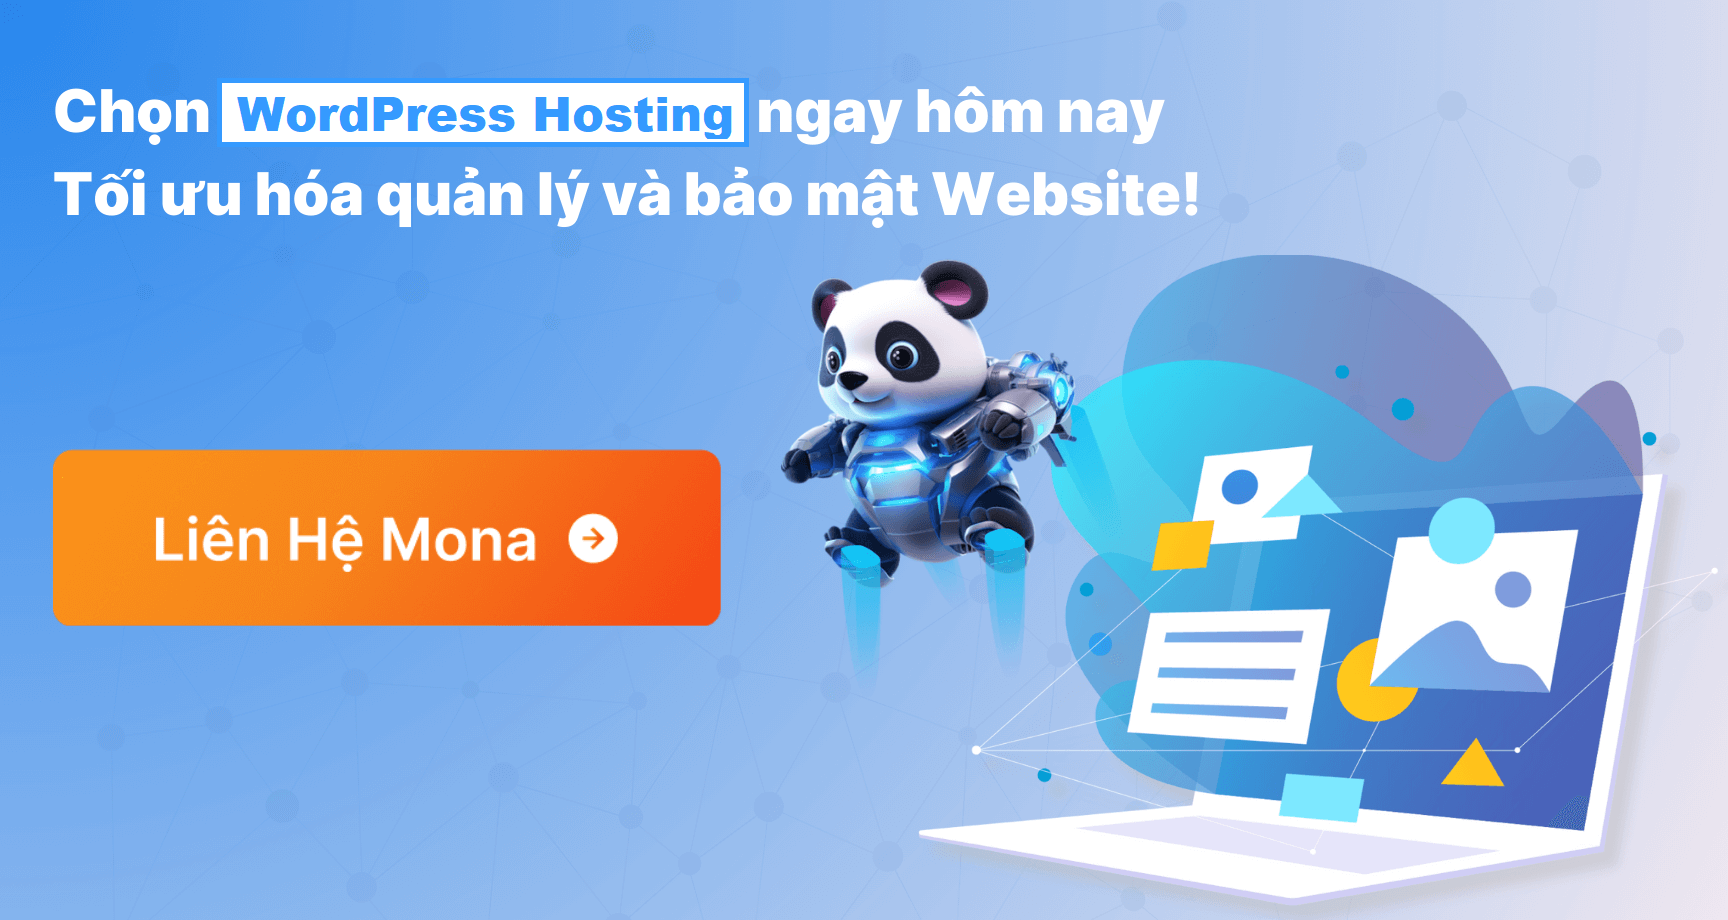 Wordpress Hosting là giải pháp lưu trữ toàn diện website